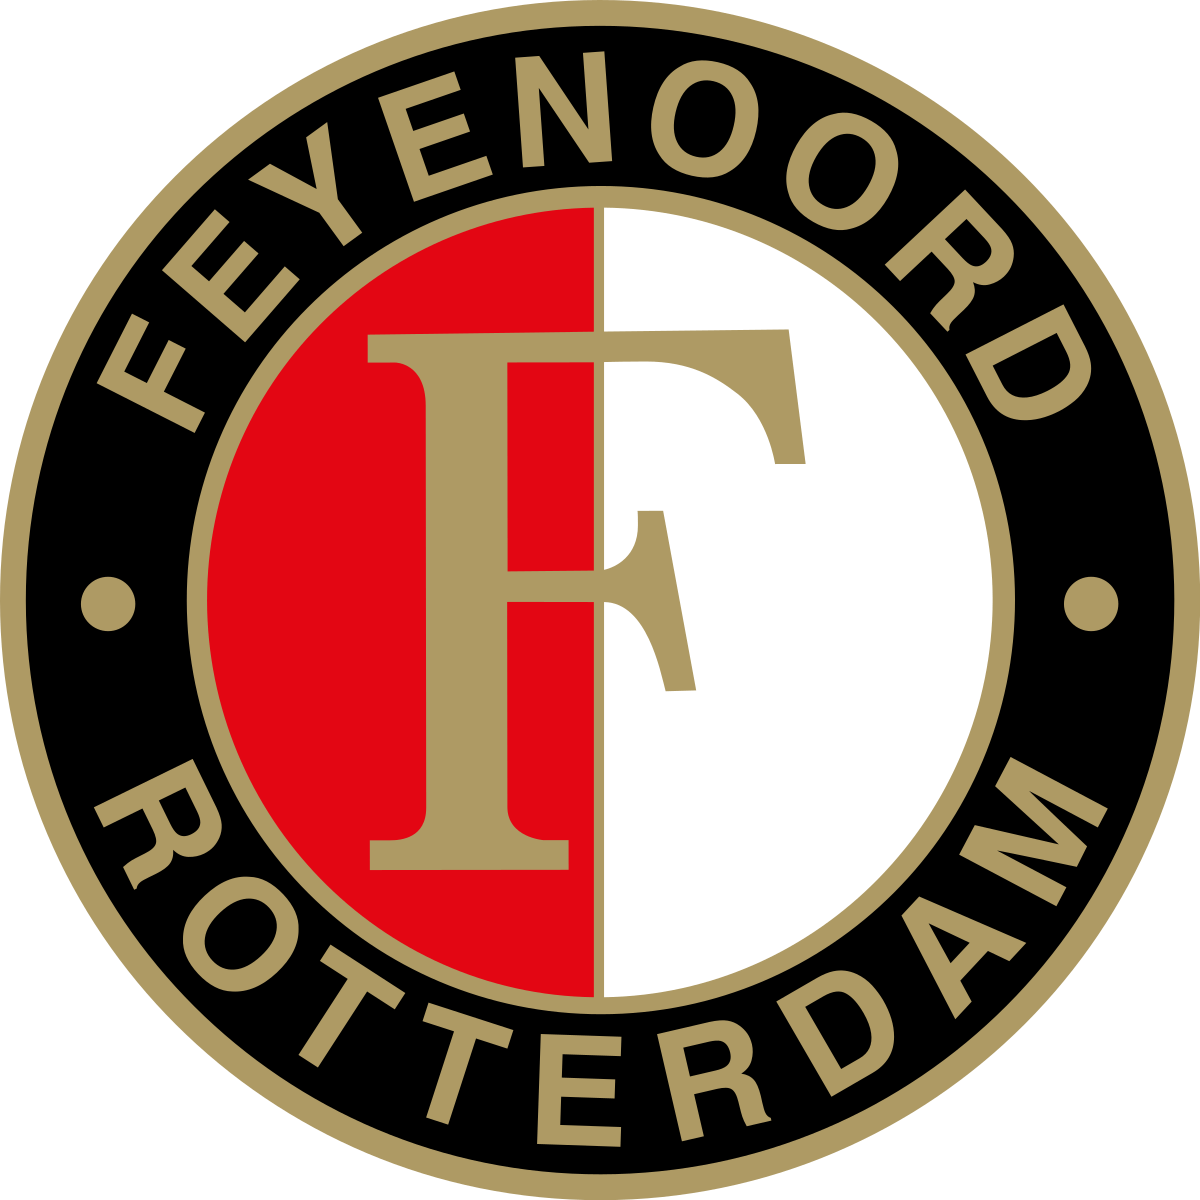 Feyenoord_logo